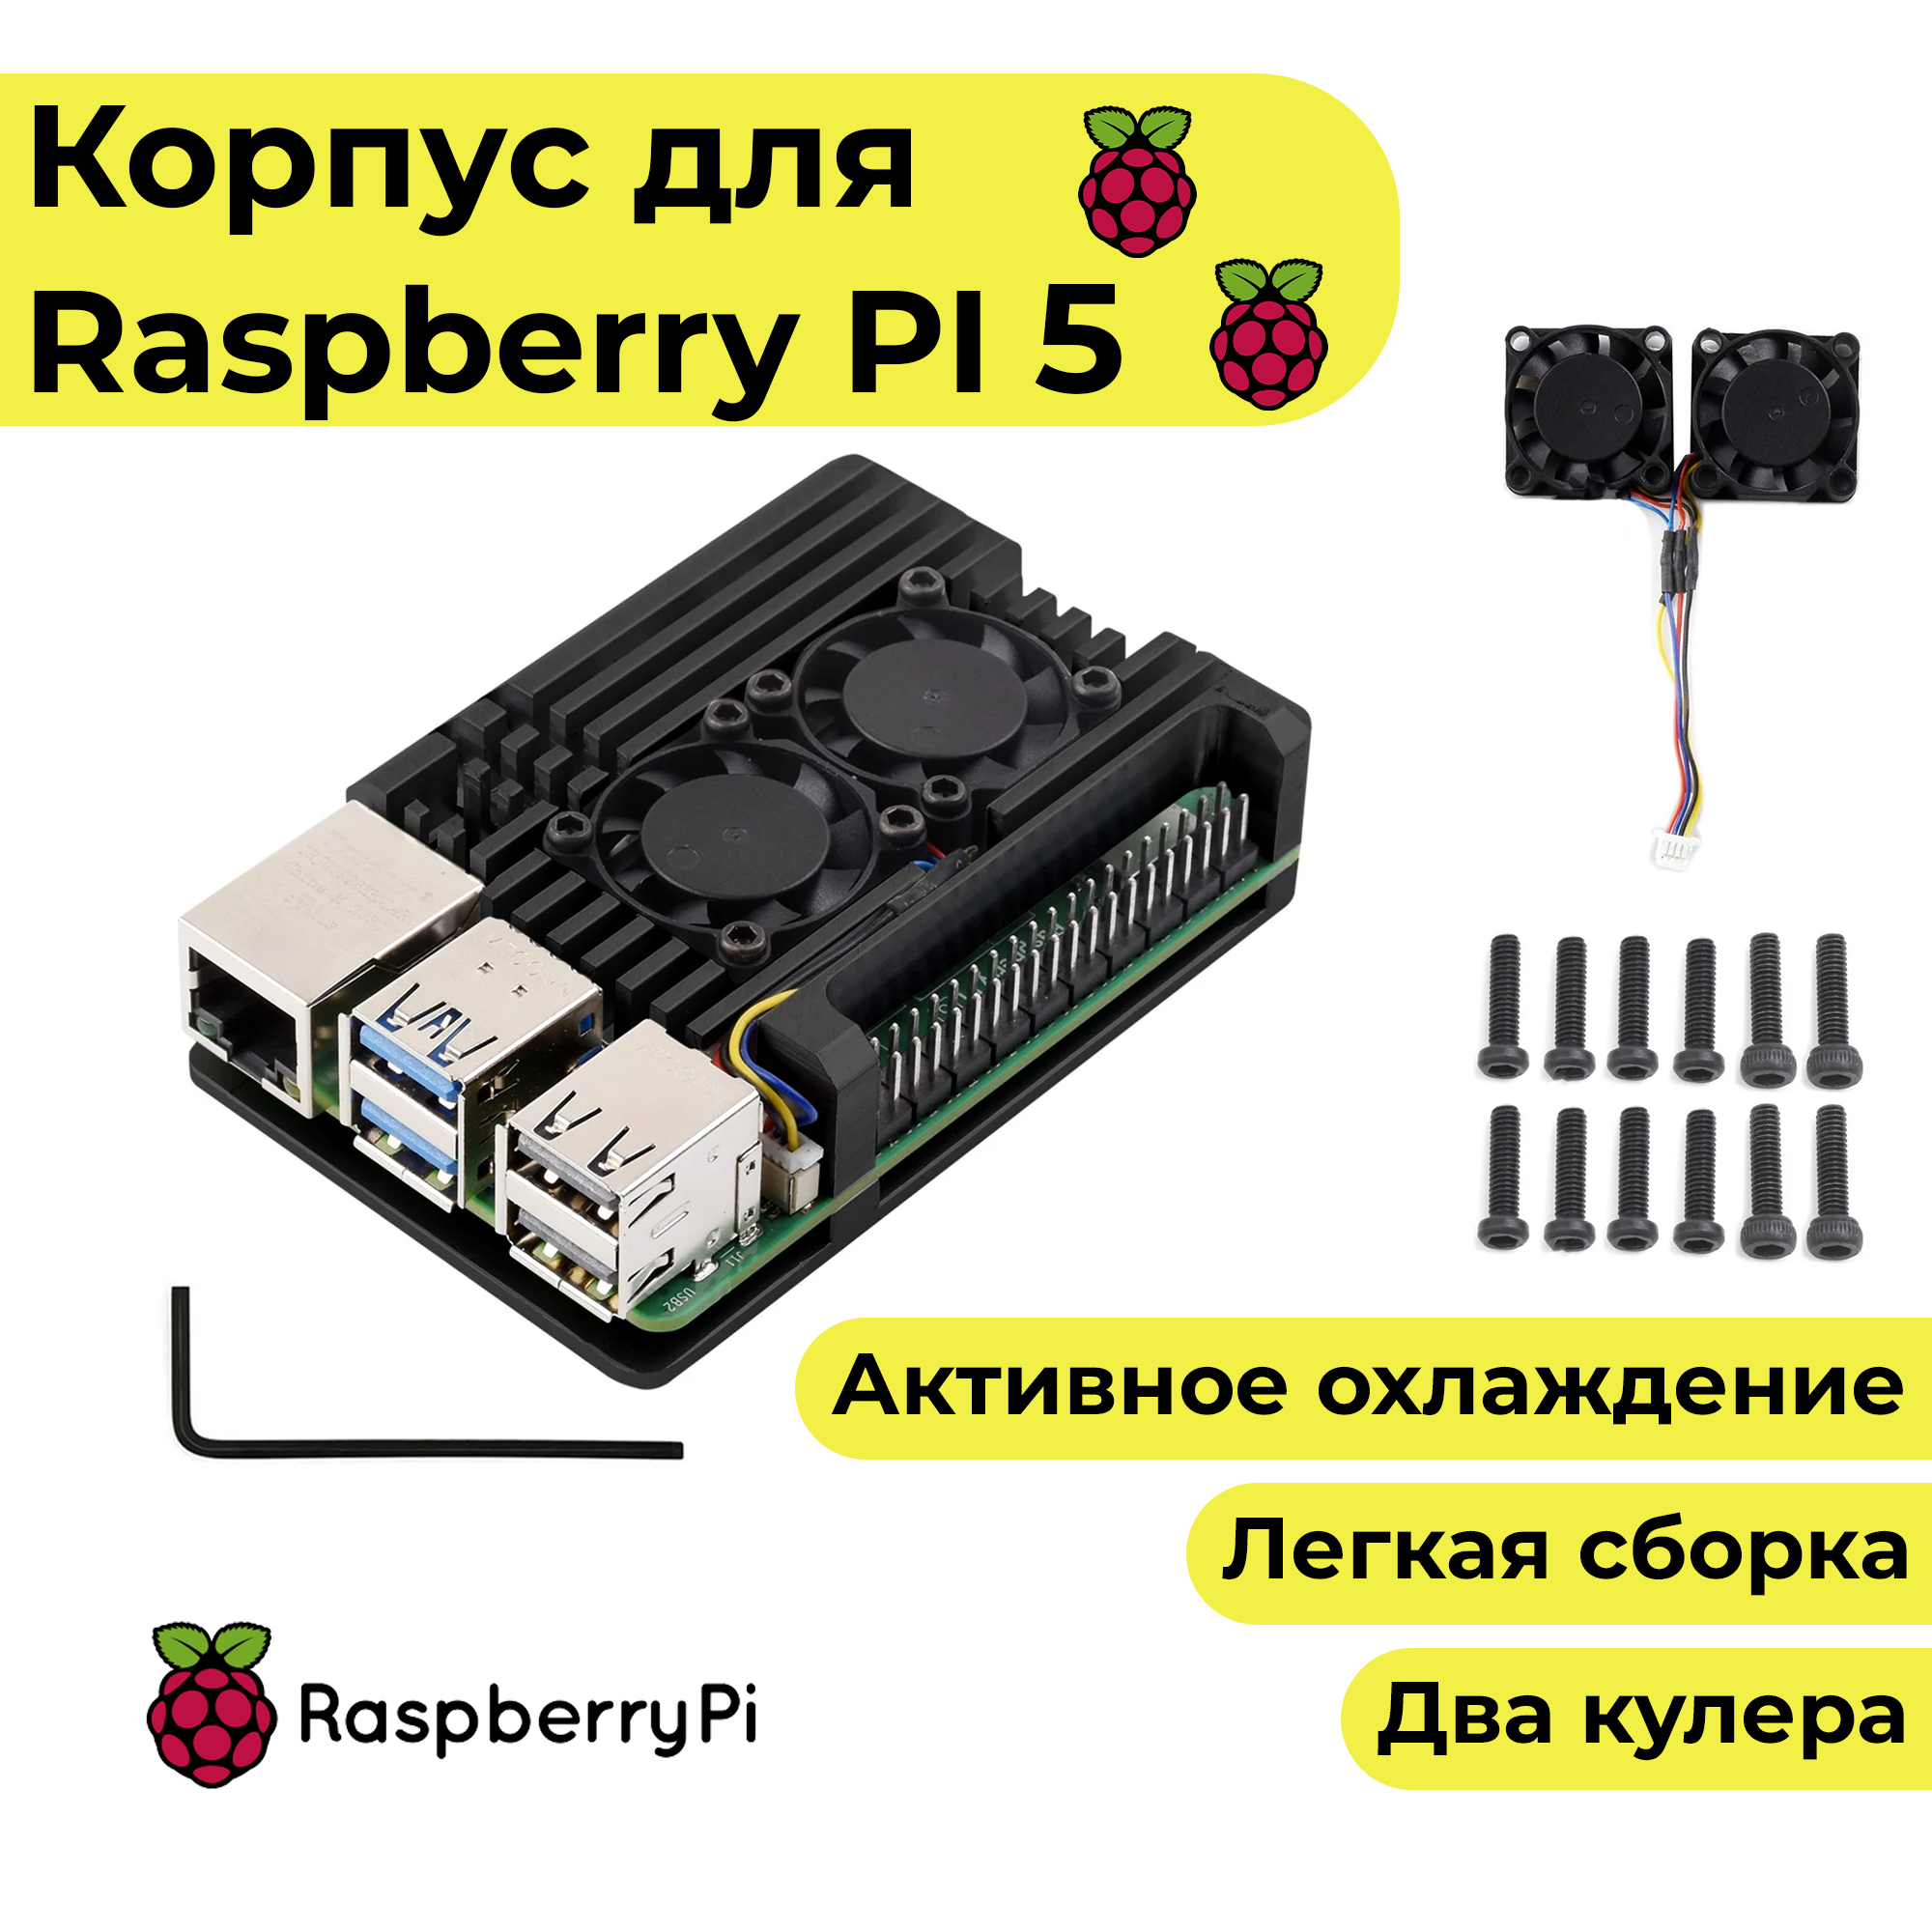 Металлический корпус для Raspberry Pi 5 (кейс, чехол, радиатор)